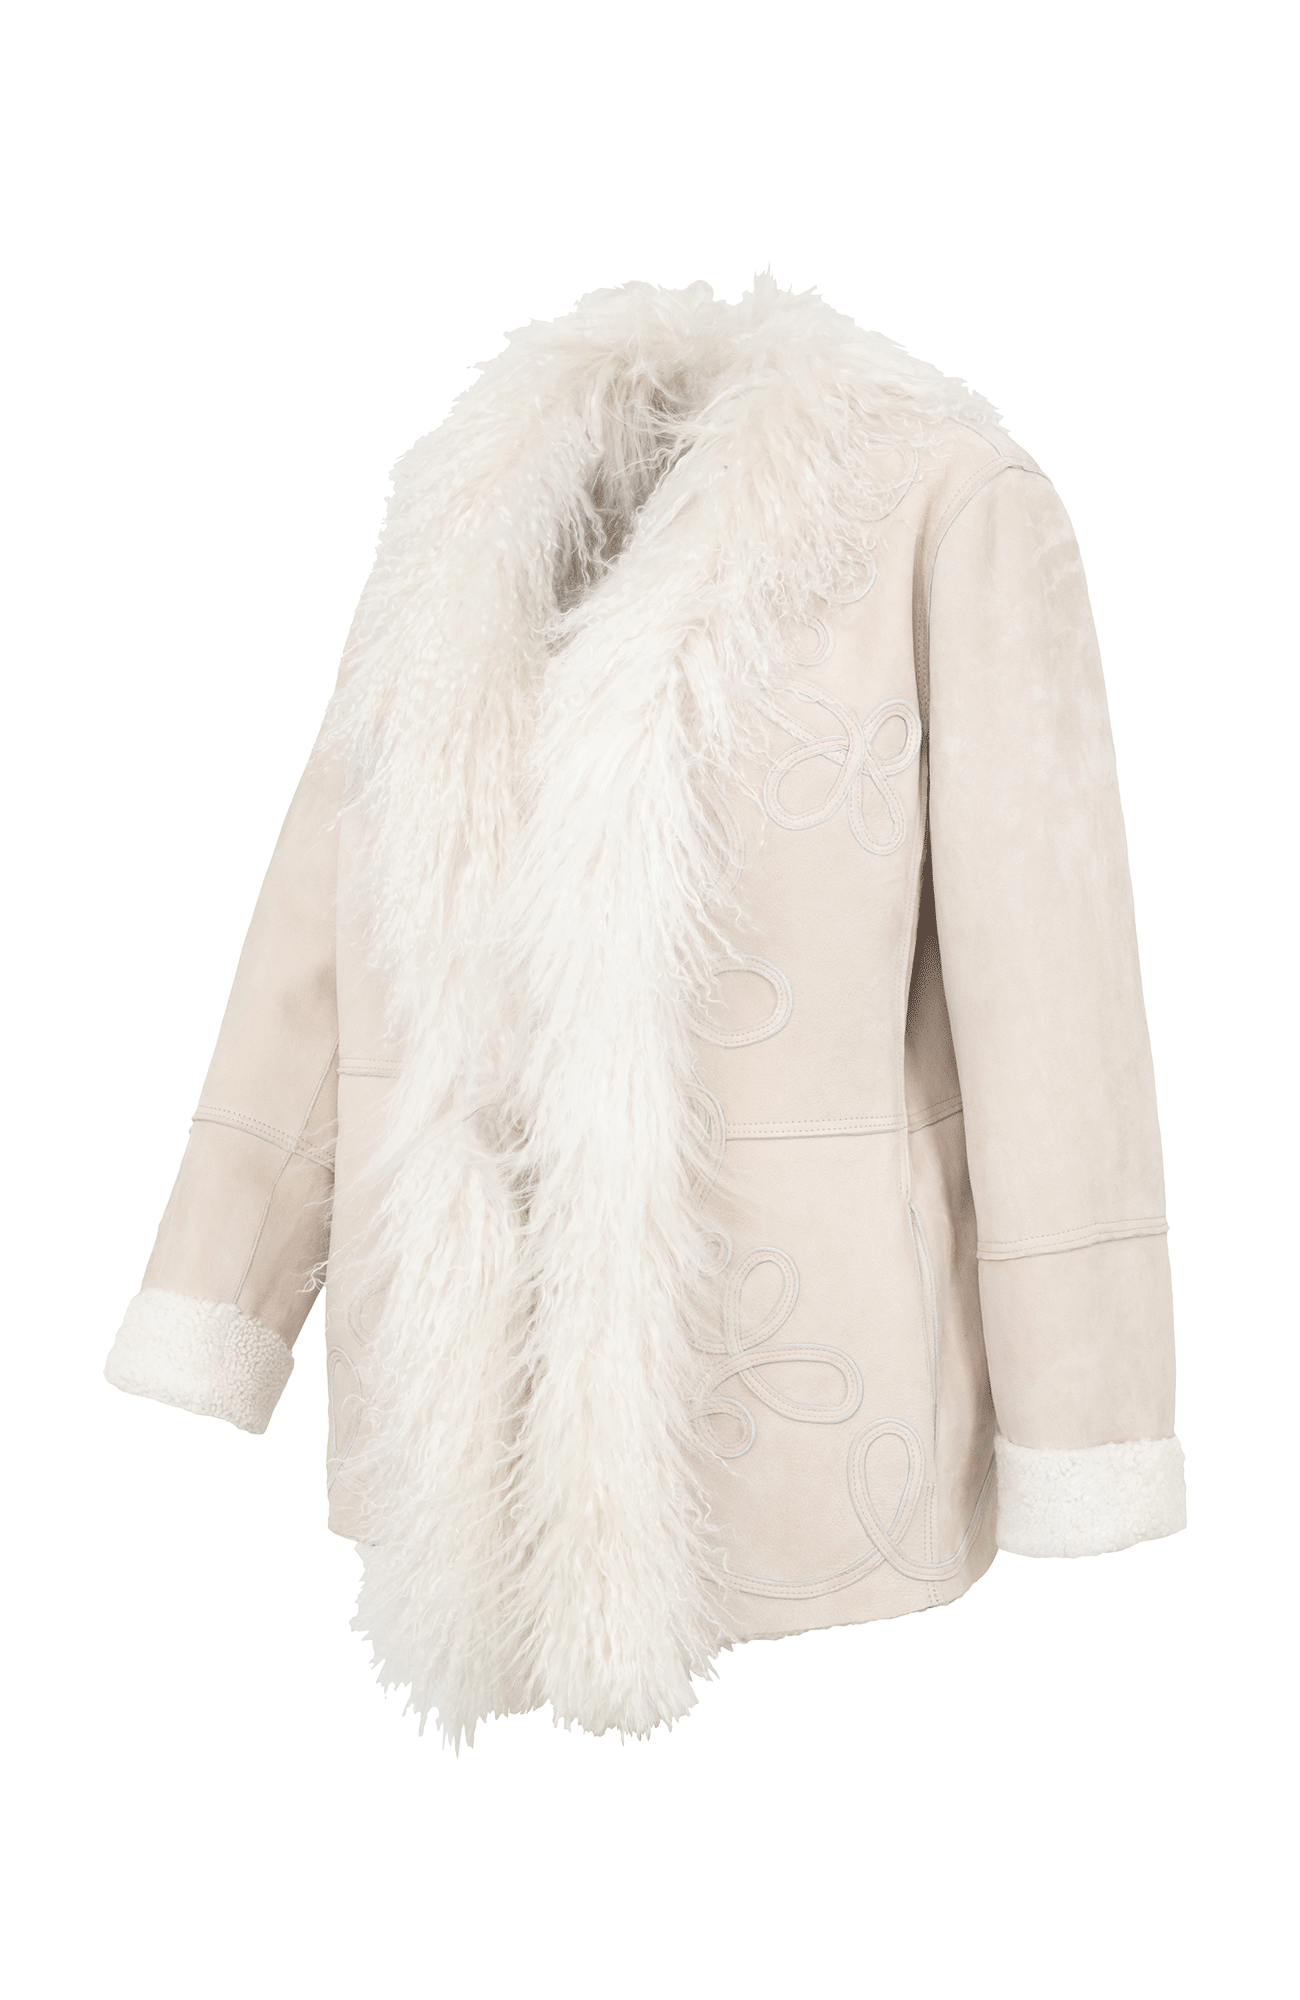 Joan lambskin jacket